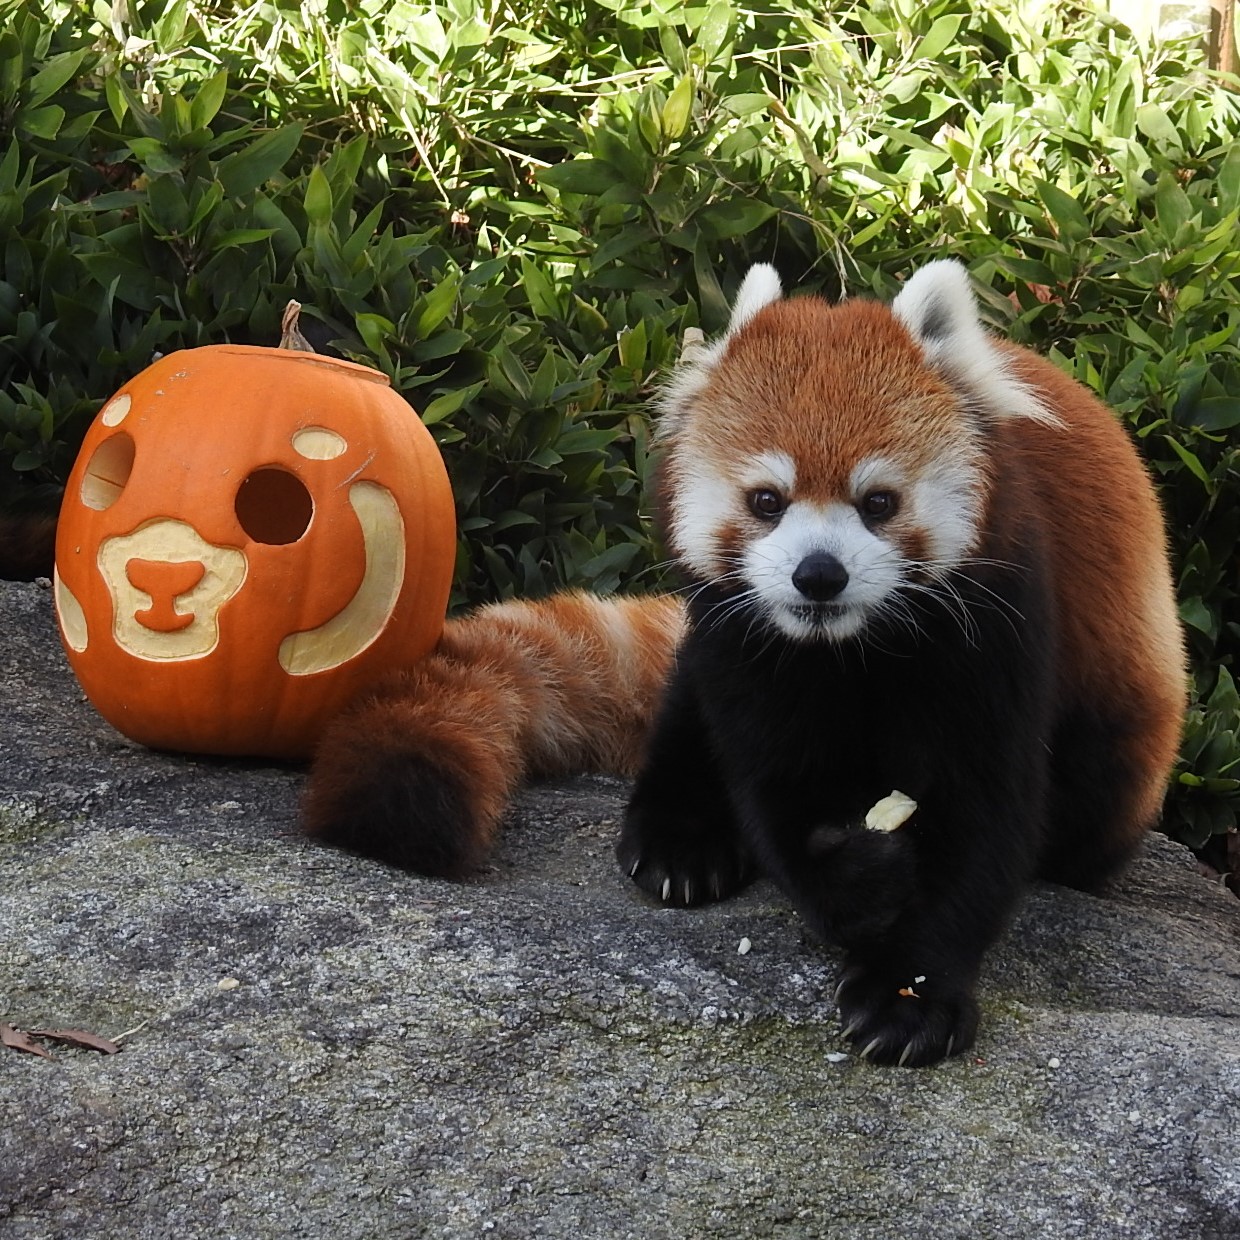 福岡市動物園ブログ 動物園もハロウィン 動物たちに お化けカボチャ をプレゼント その2